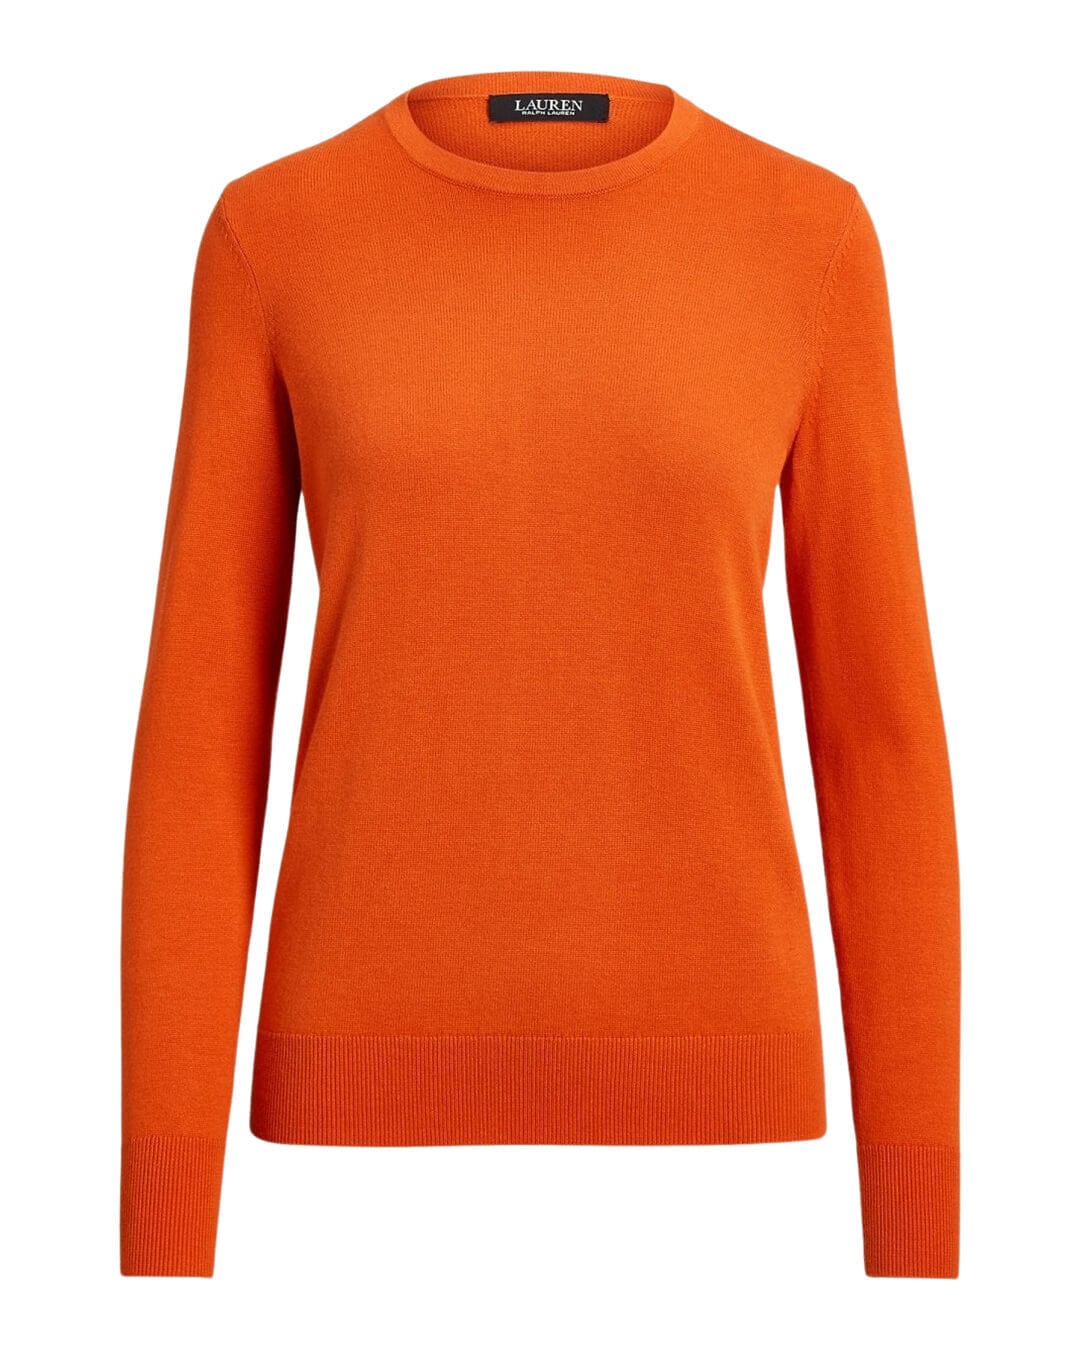 Lauren By Ralph Lauren Jumpers Lauren by Ralph Lauren Orange Cotton-Blend Sweater